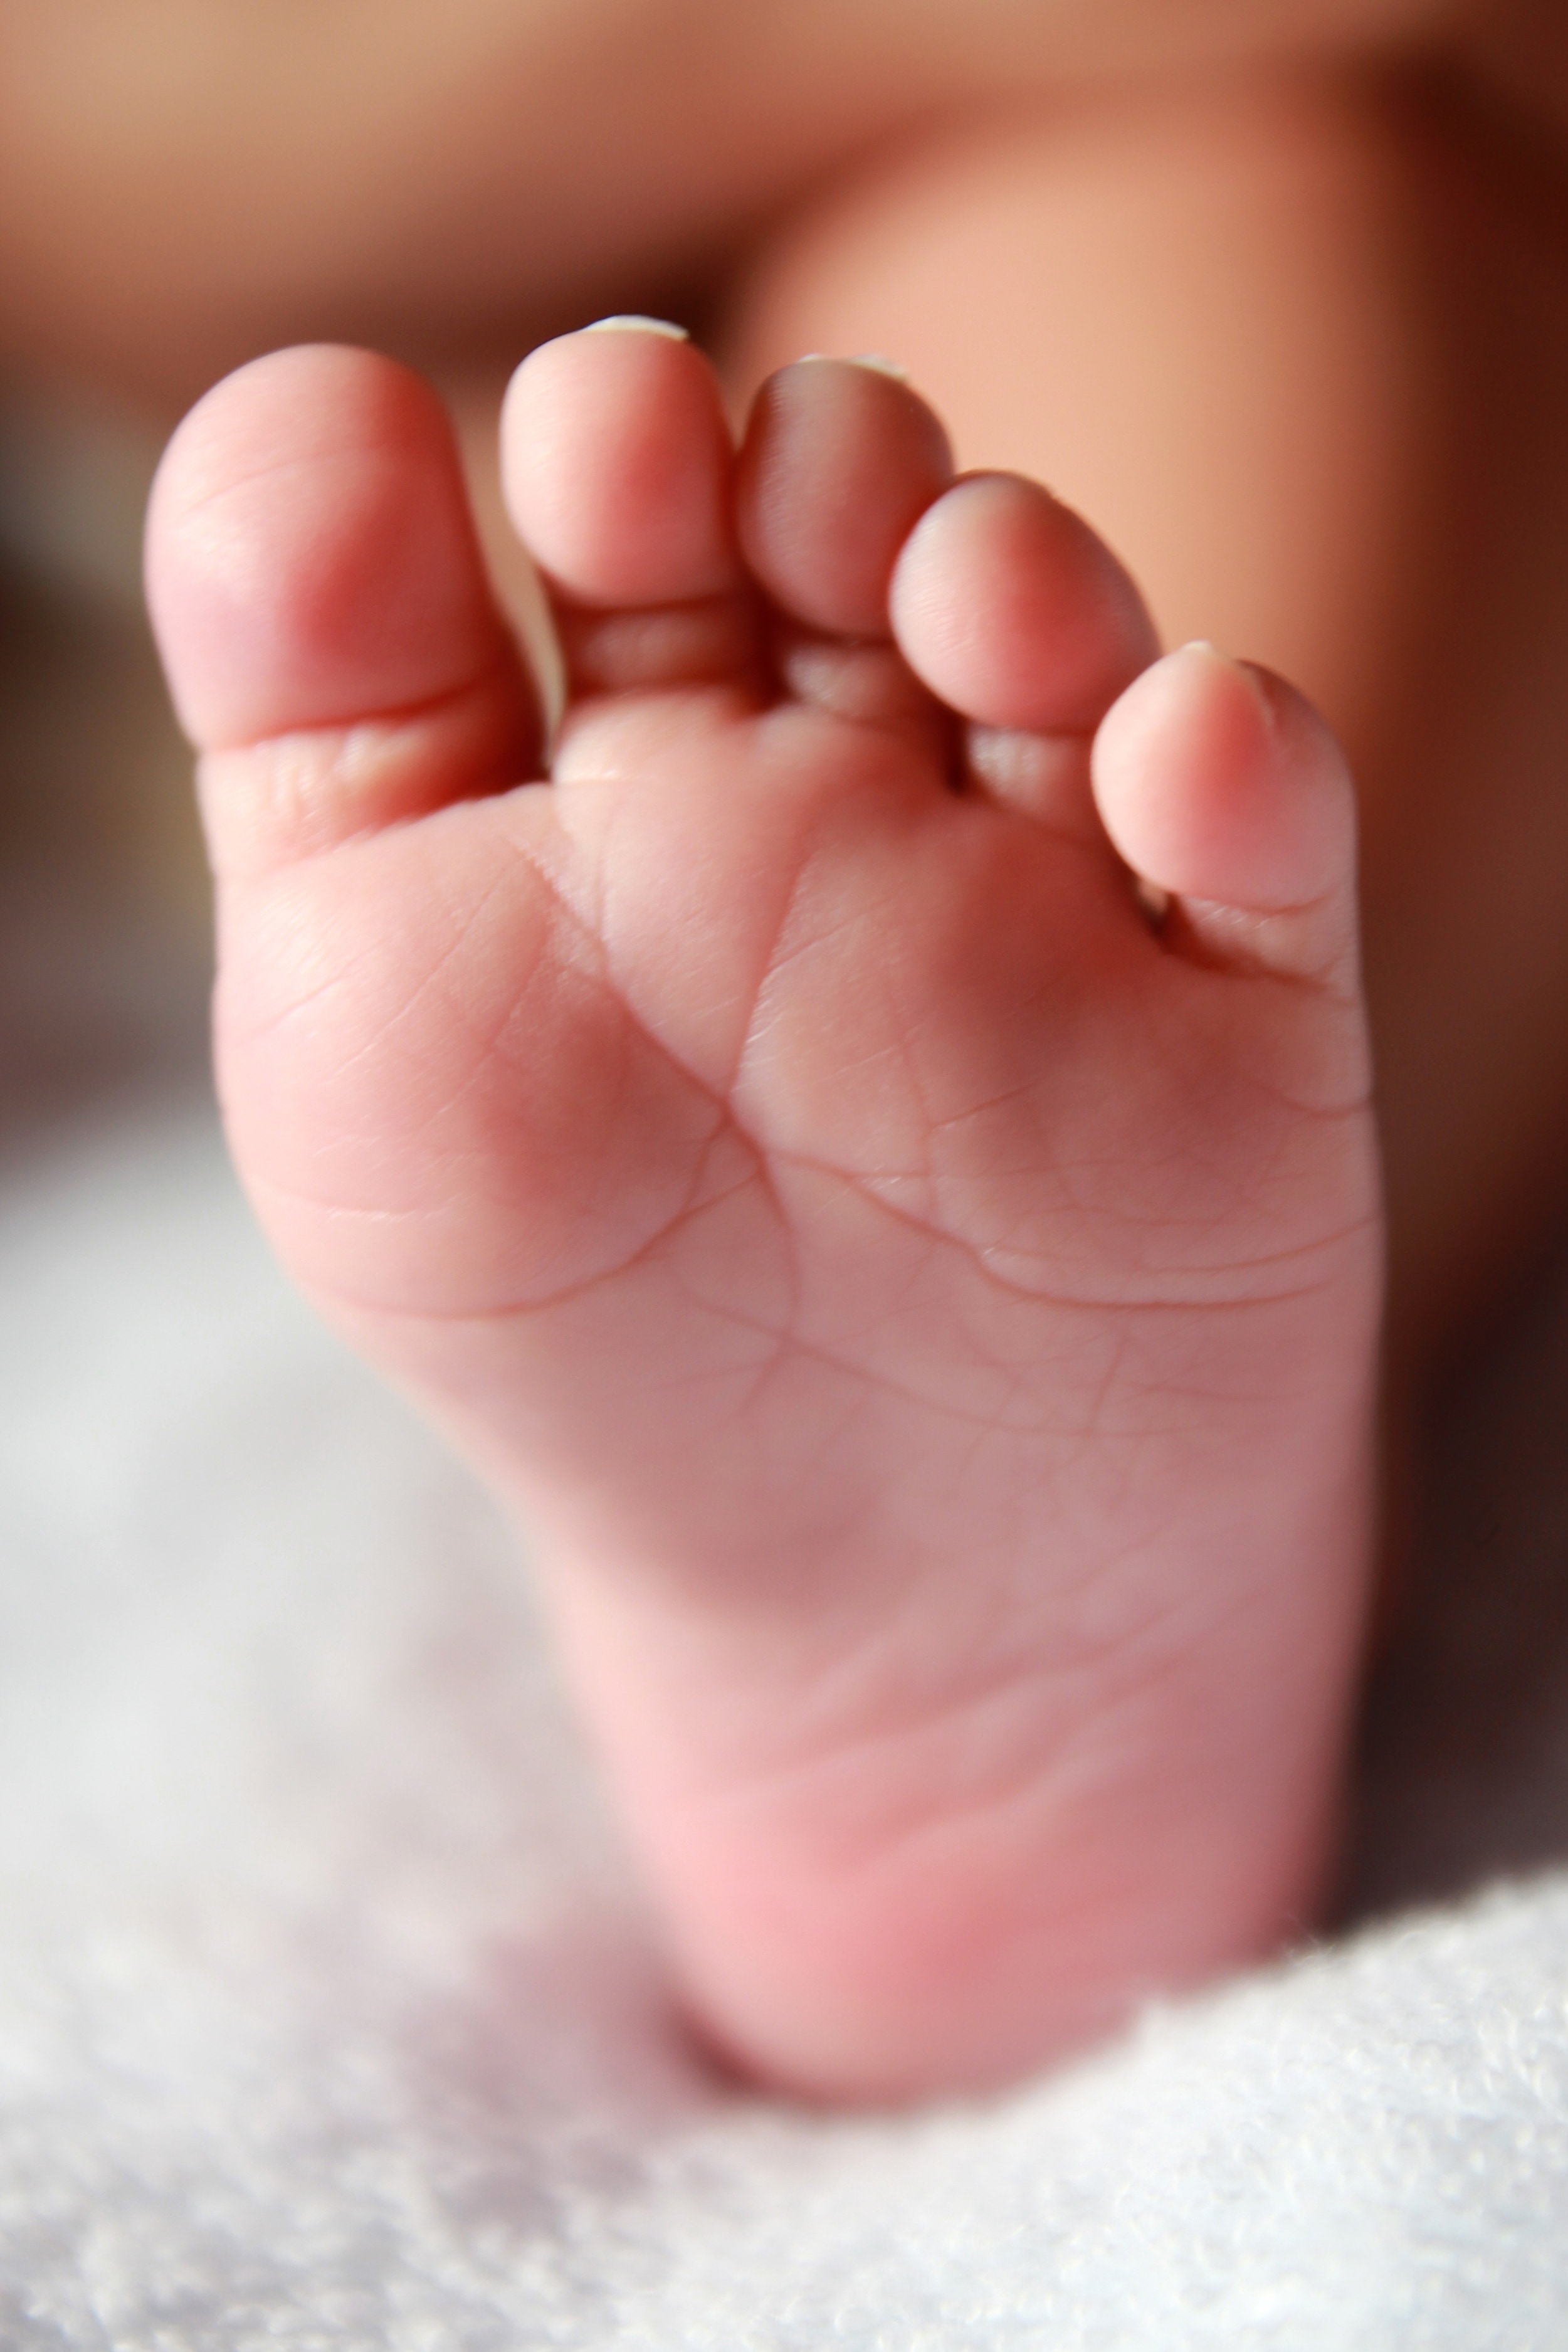 Newborn, Baby Foot, Baby, Leg, Child, baby, human foot